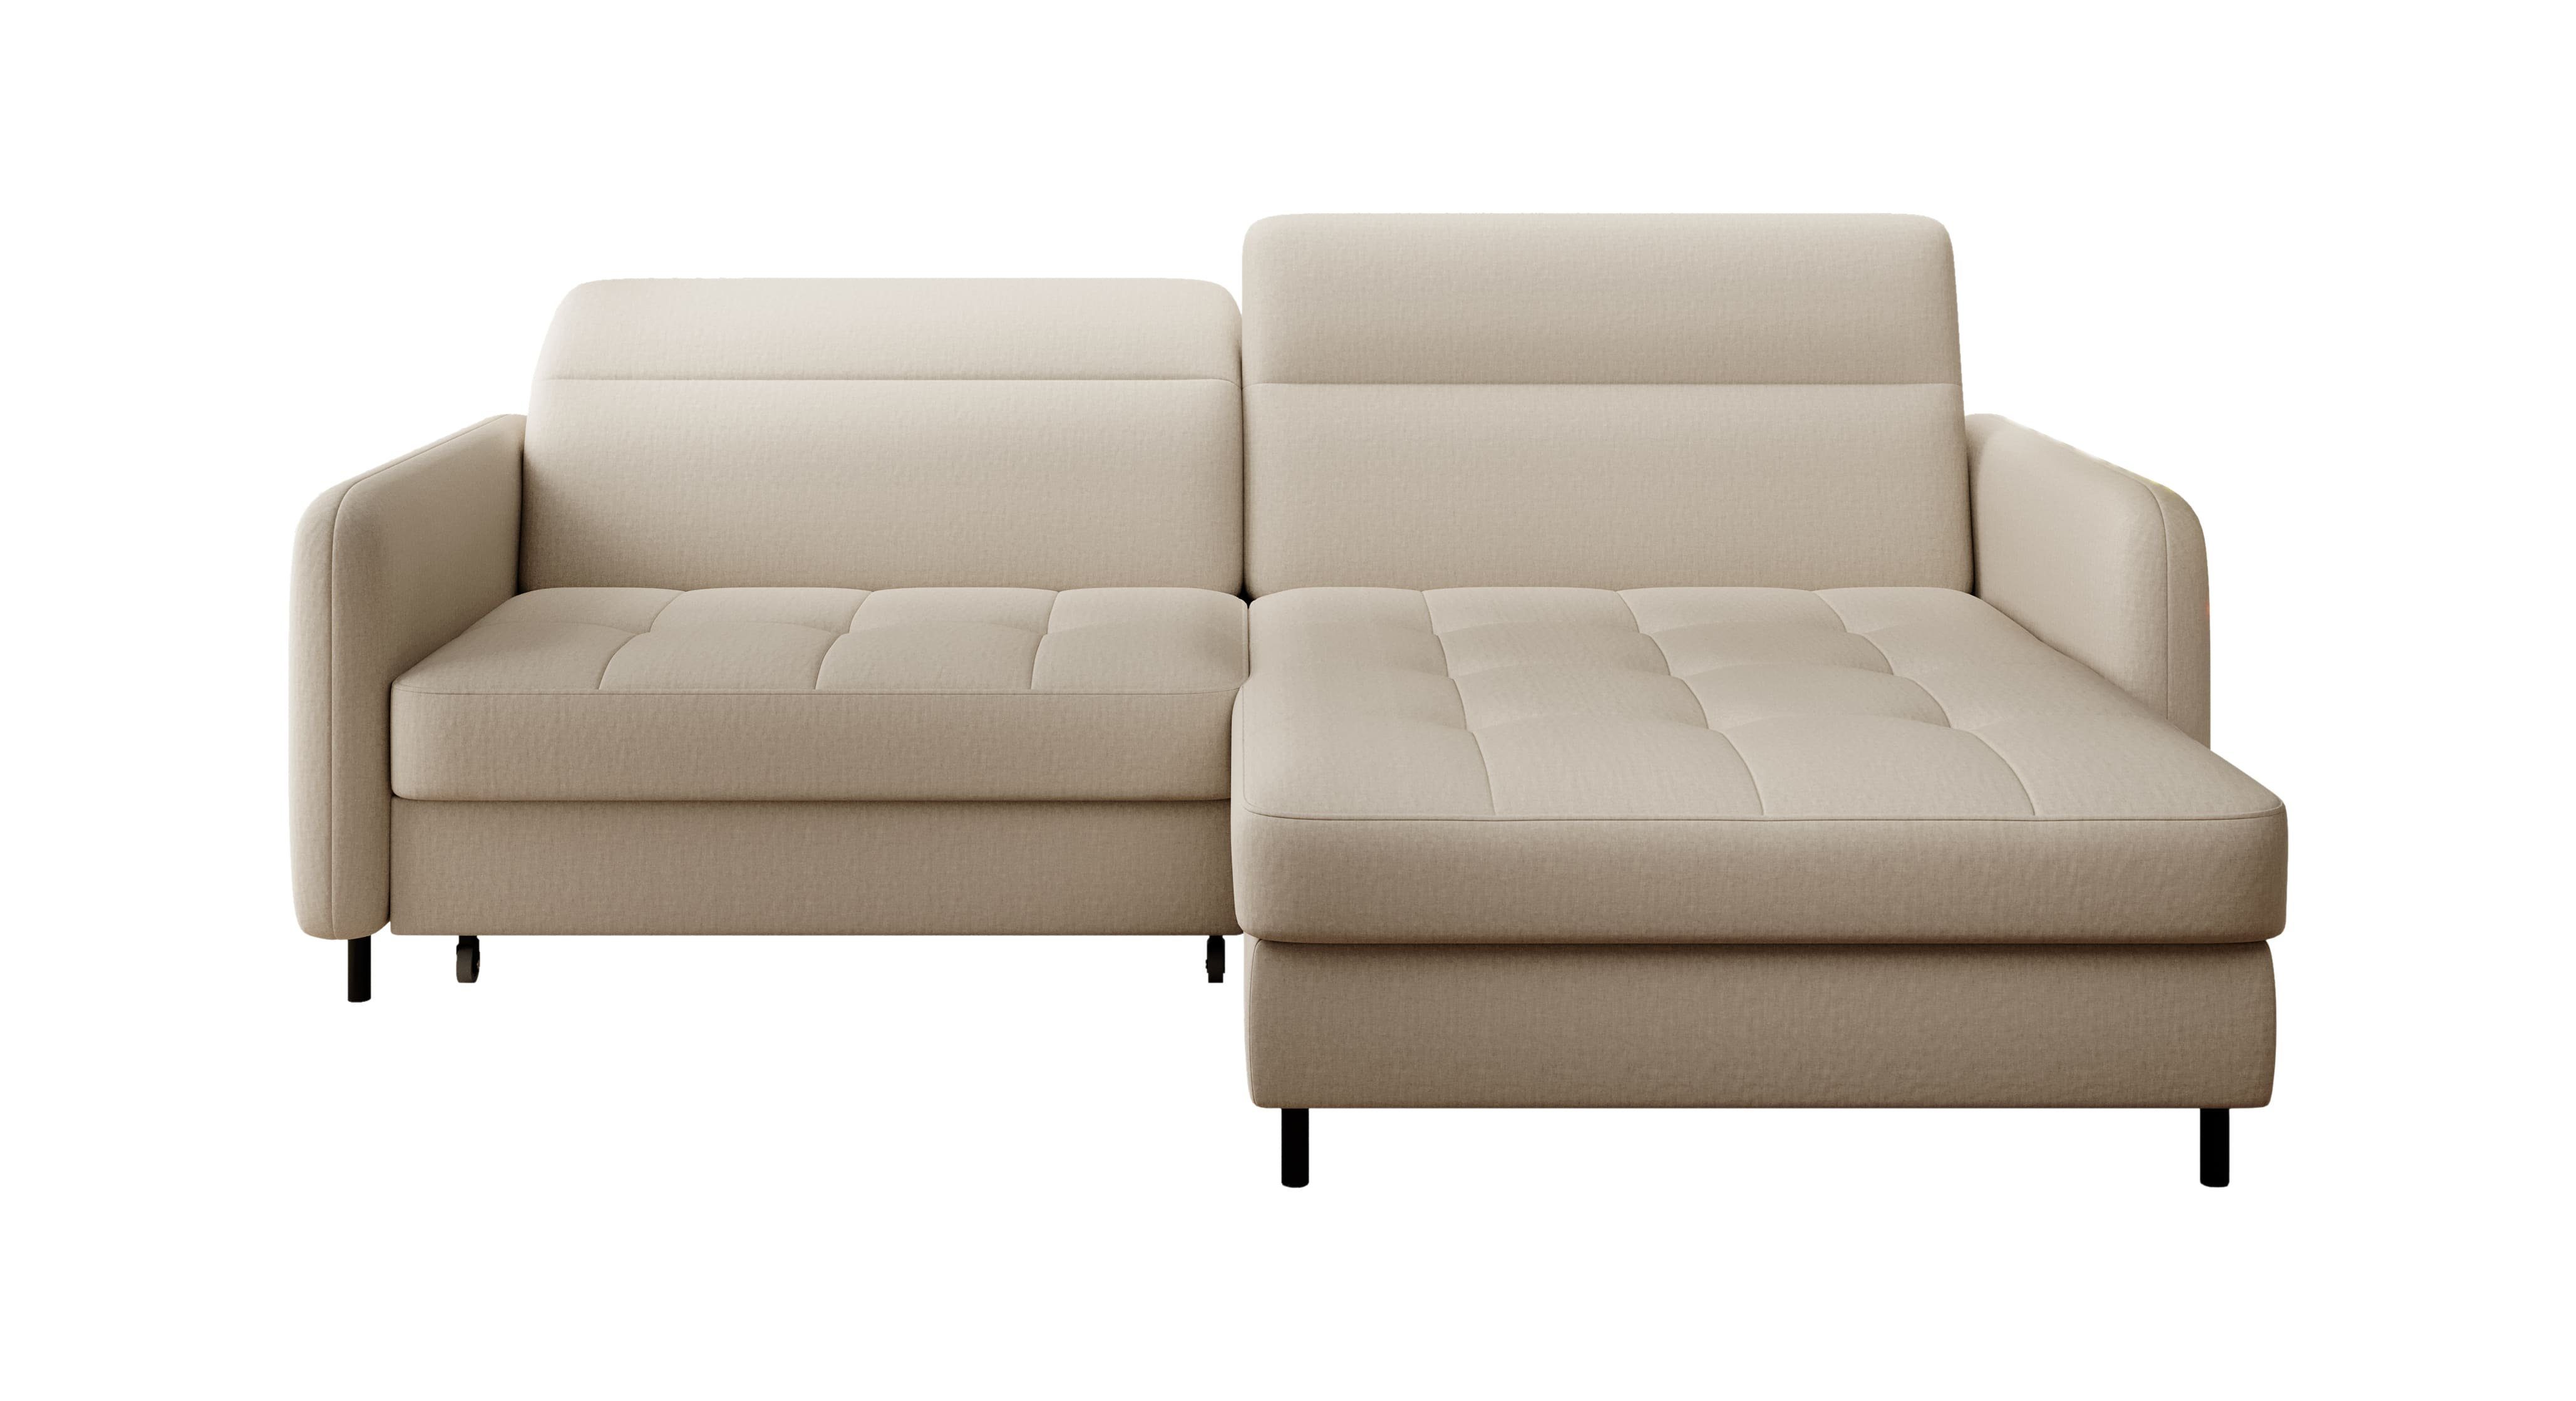 MOEBLO Ecksofa GRAVES, Couch L-Form Polstergarnitur Wohnlandschaft Polstersofa mit mane Couchgranitur - 228x165x100 cm, mit Schlaffunktion